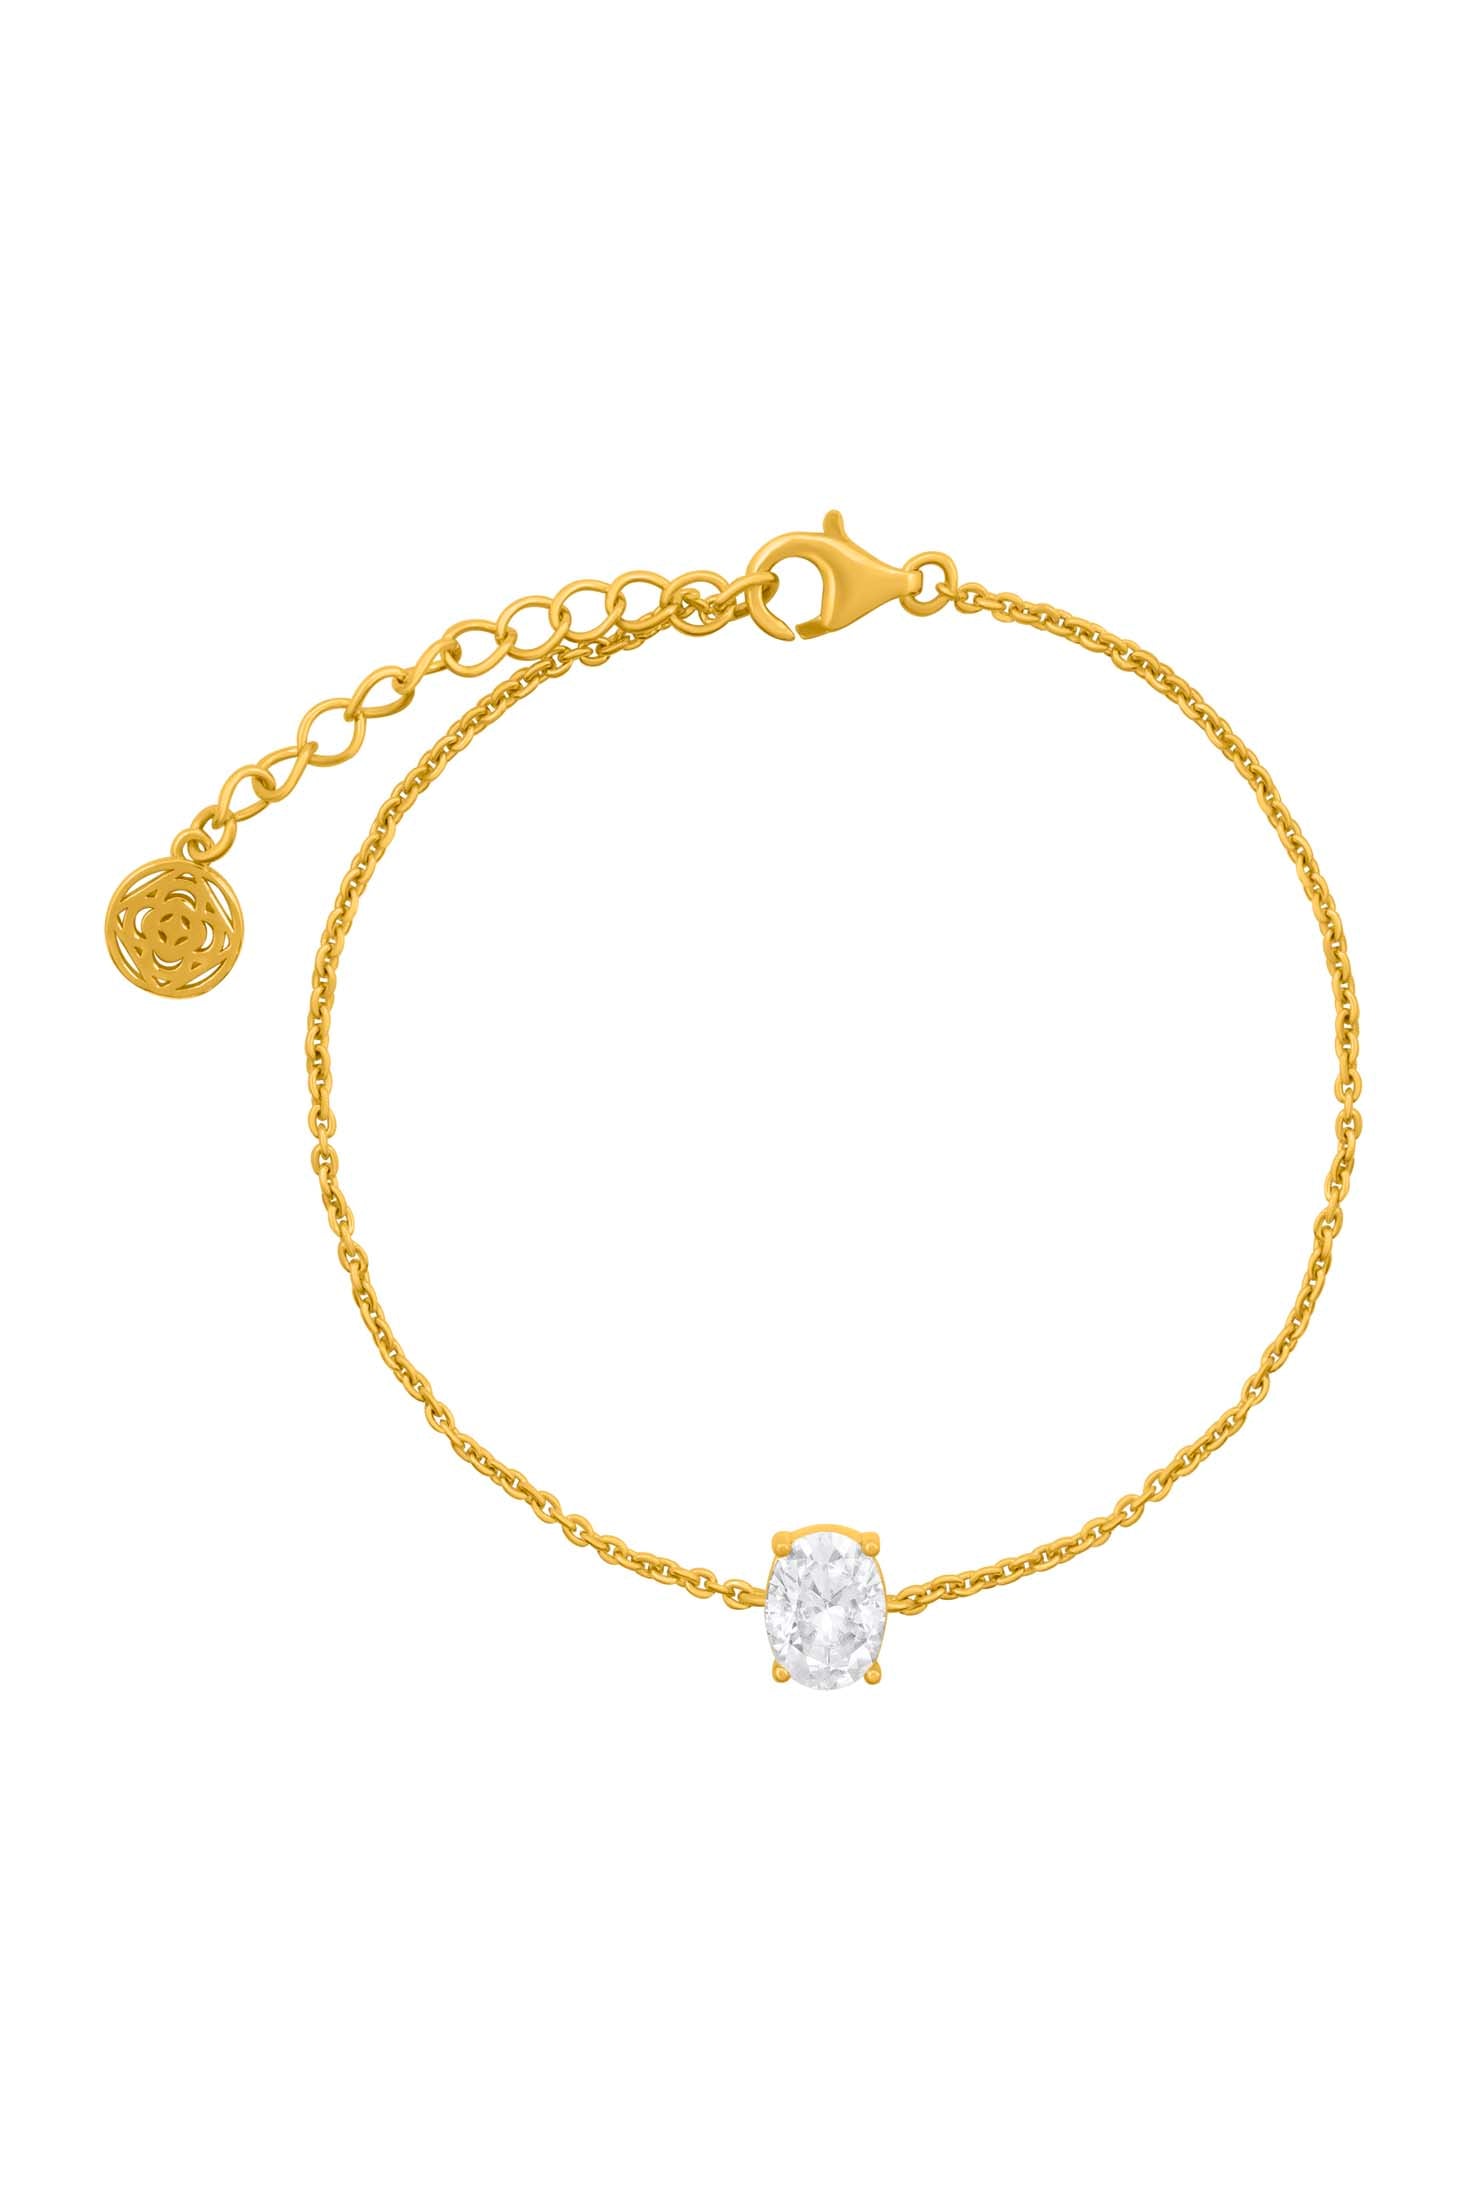 Moissanite Solitaire Bracelet in 18k Gold Vermeil